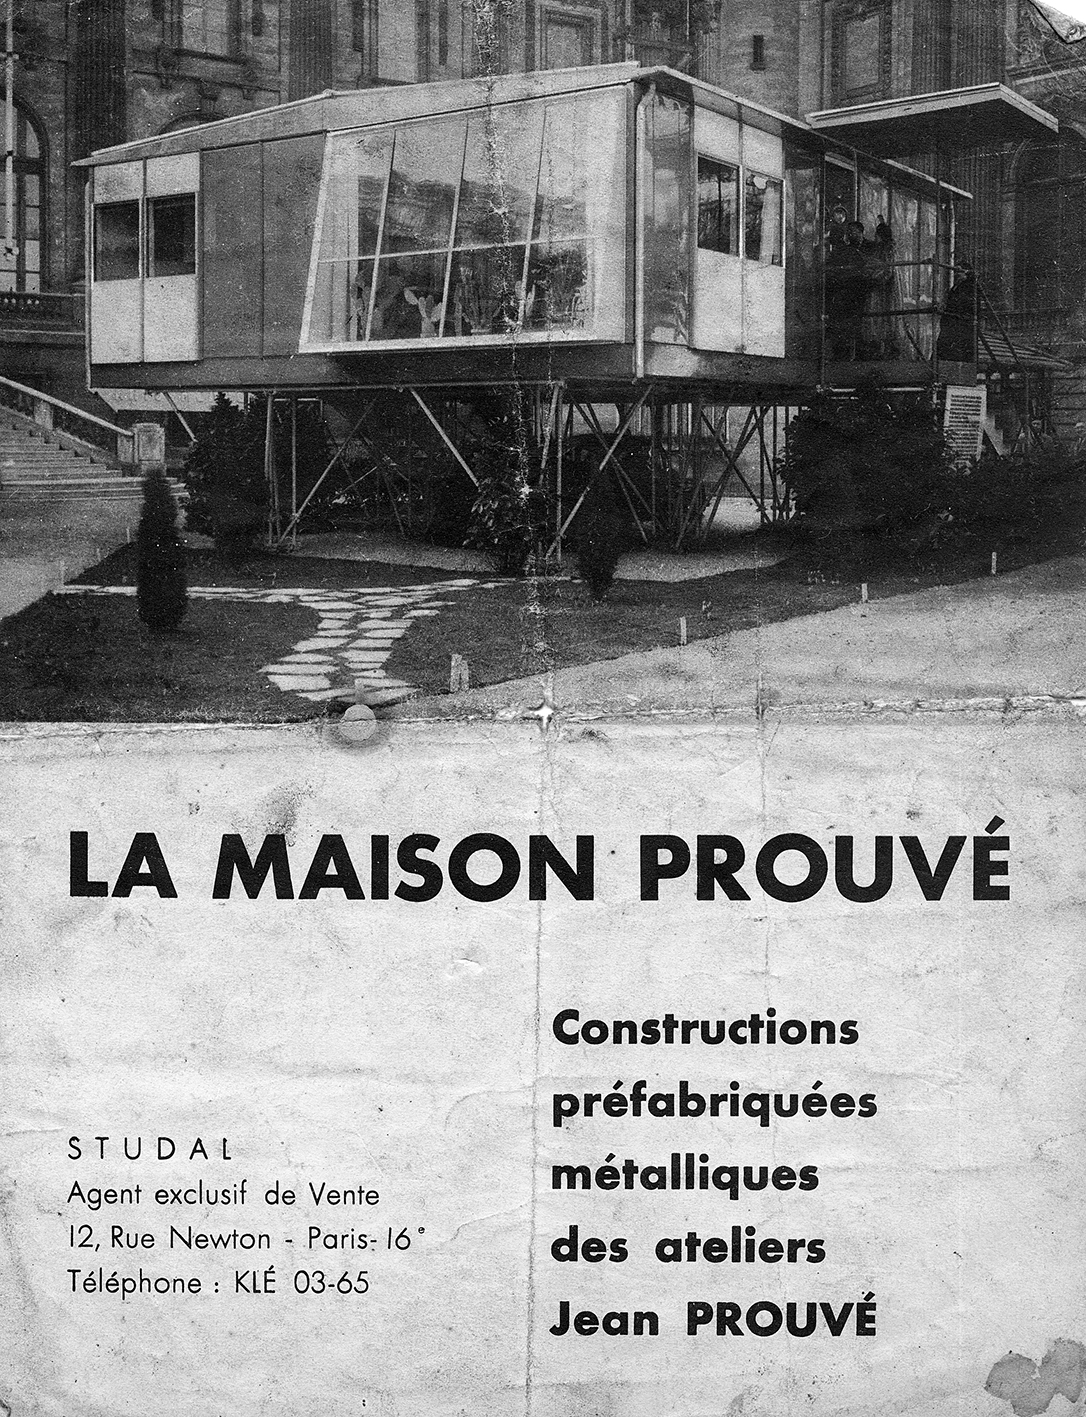 « La maison Prouvé ». Brochure publicitaire pour les Ateliers Jean Prouvé, Studal, Paris, c. 1950.